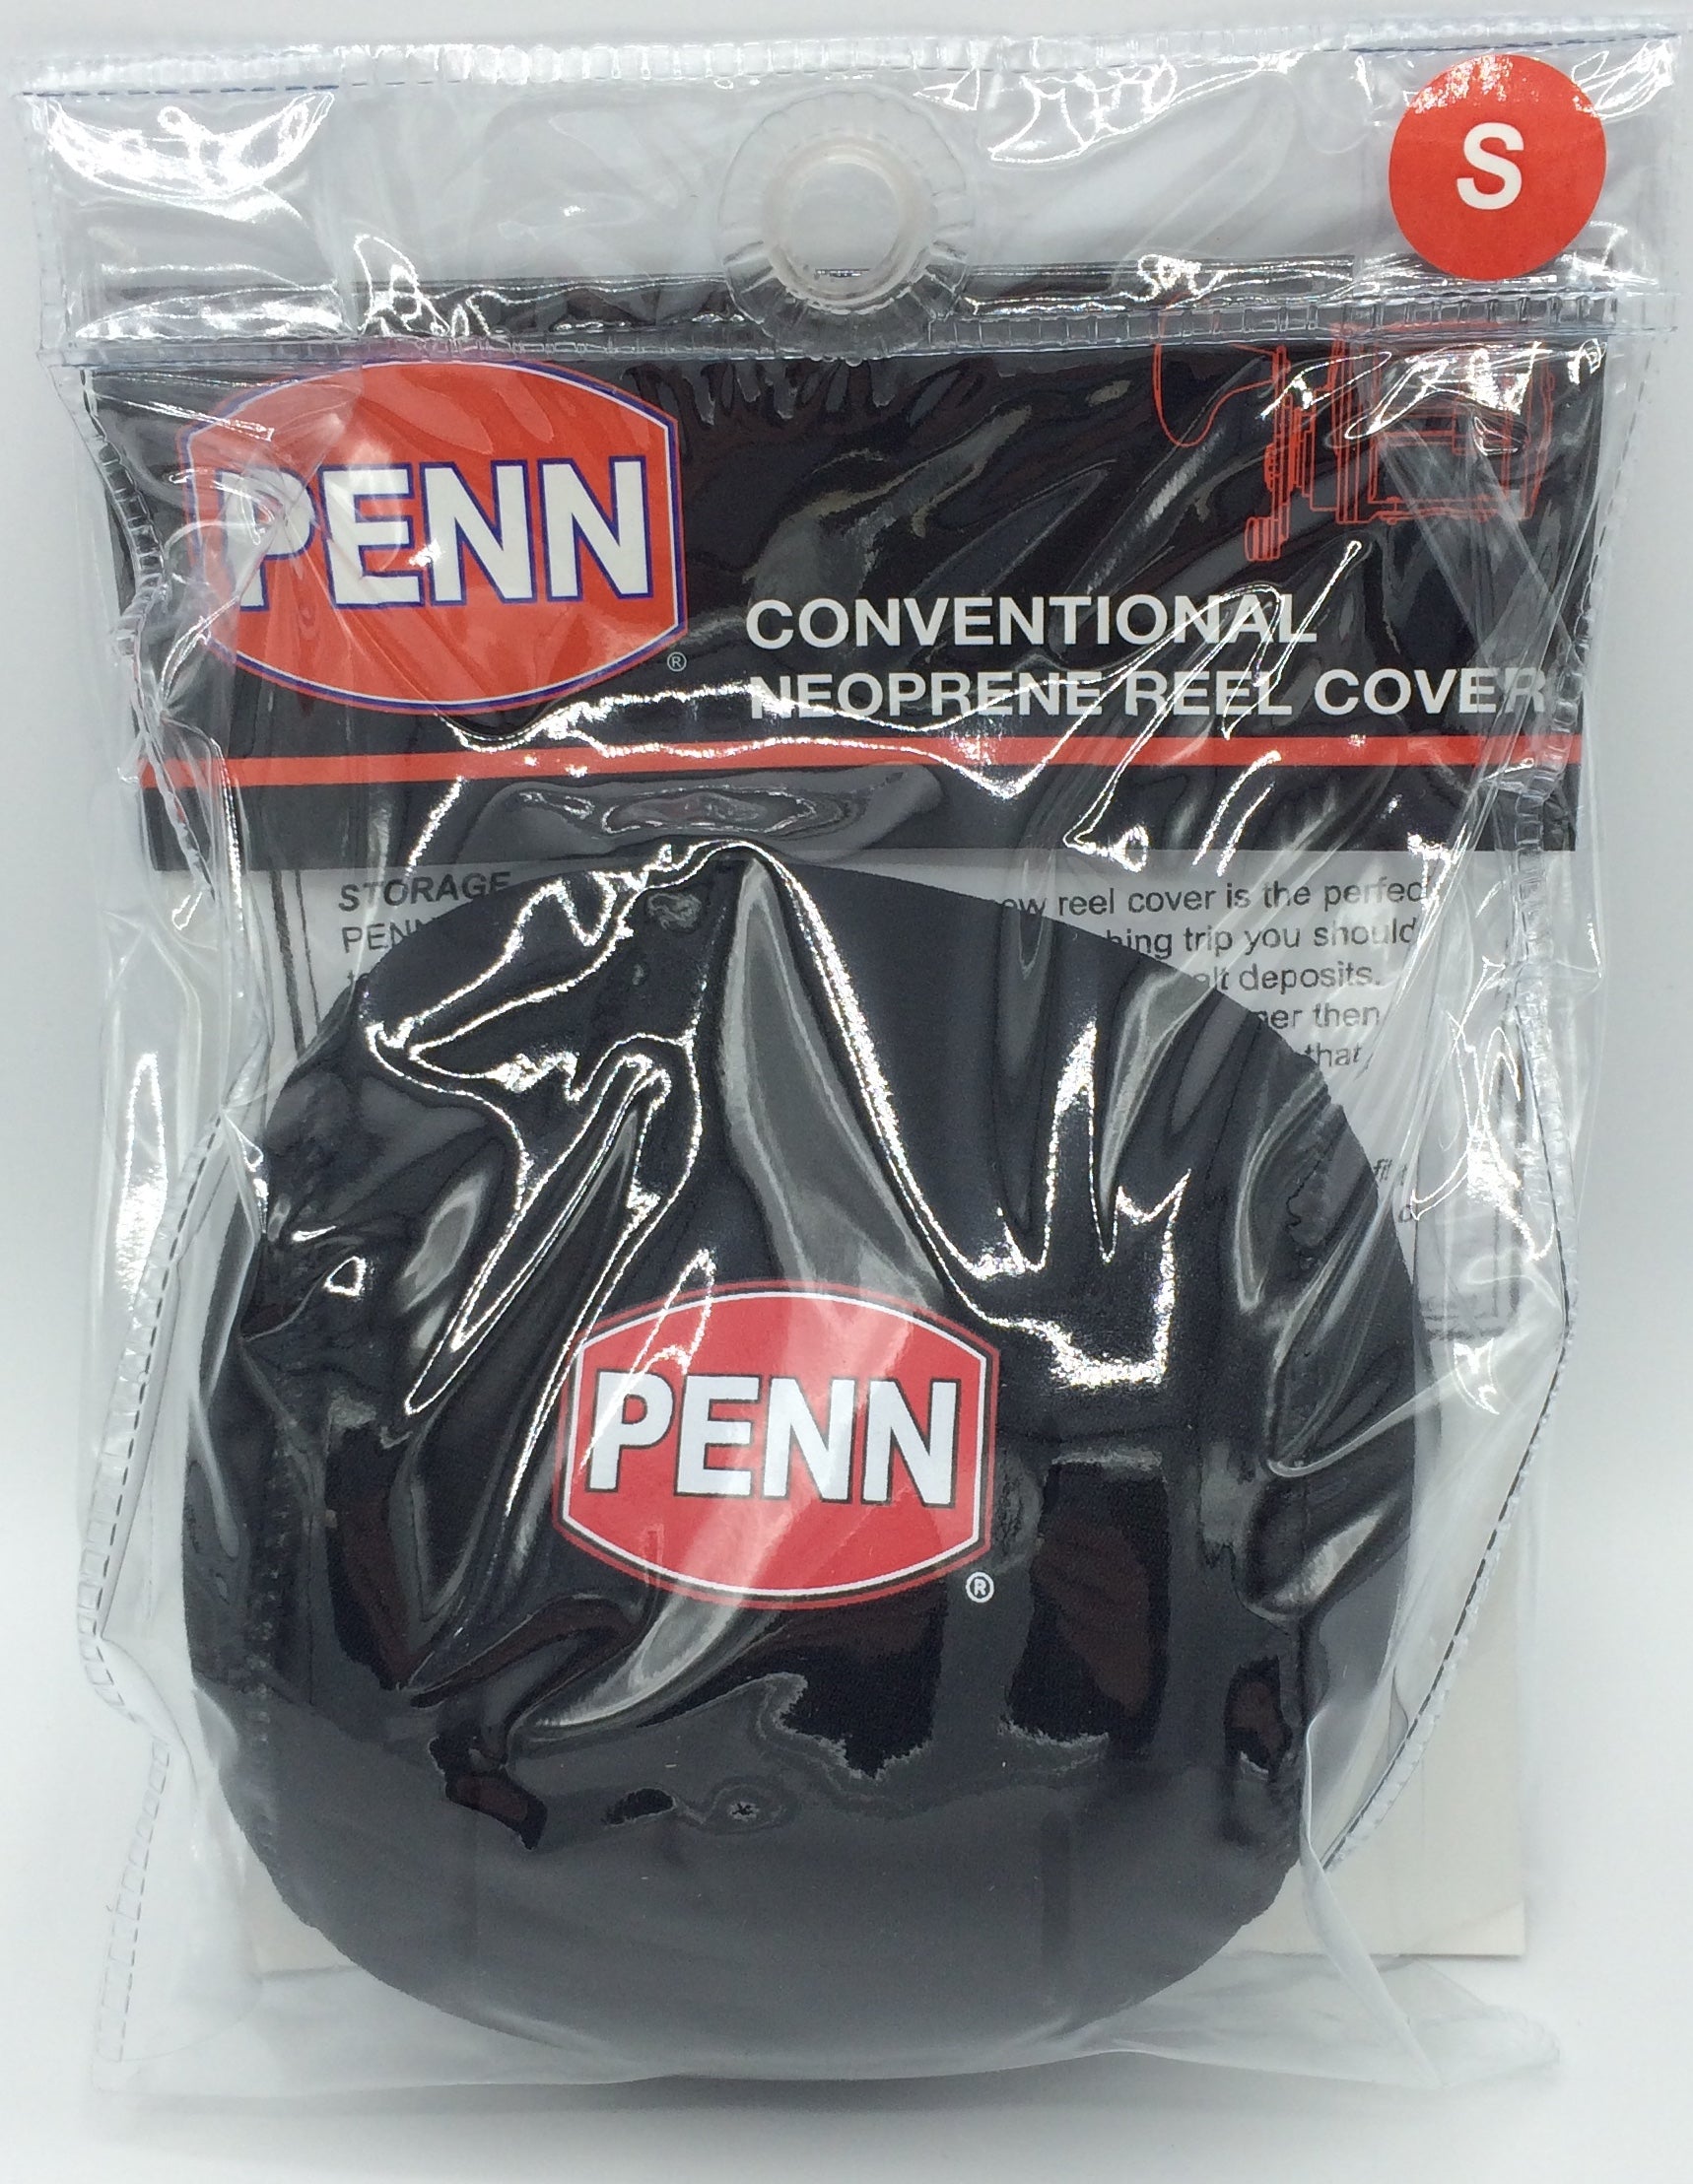 PENN Neoprene Conventional Reel Cover